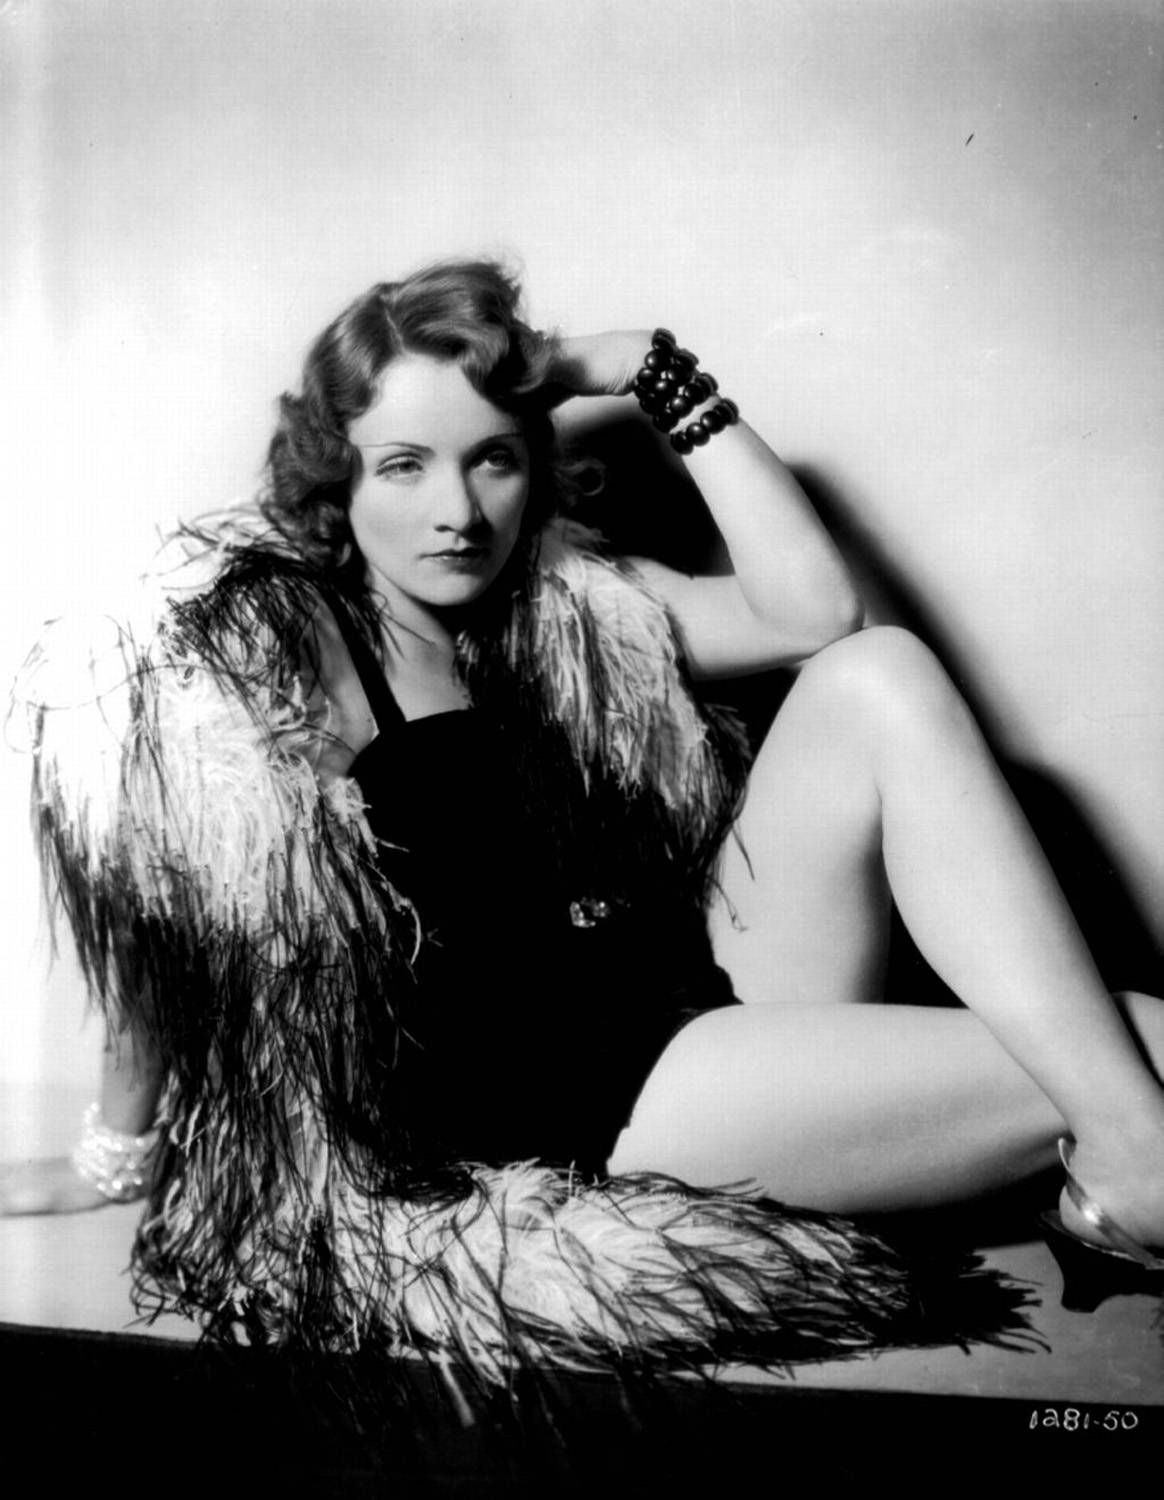 Marlene Dietrich Cabaret Outfit Live Wallpaper: Tag i det teatralske udseende af Marlene Dietrichs Cabaret-dragt. Wallpaper